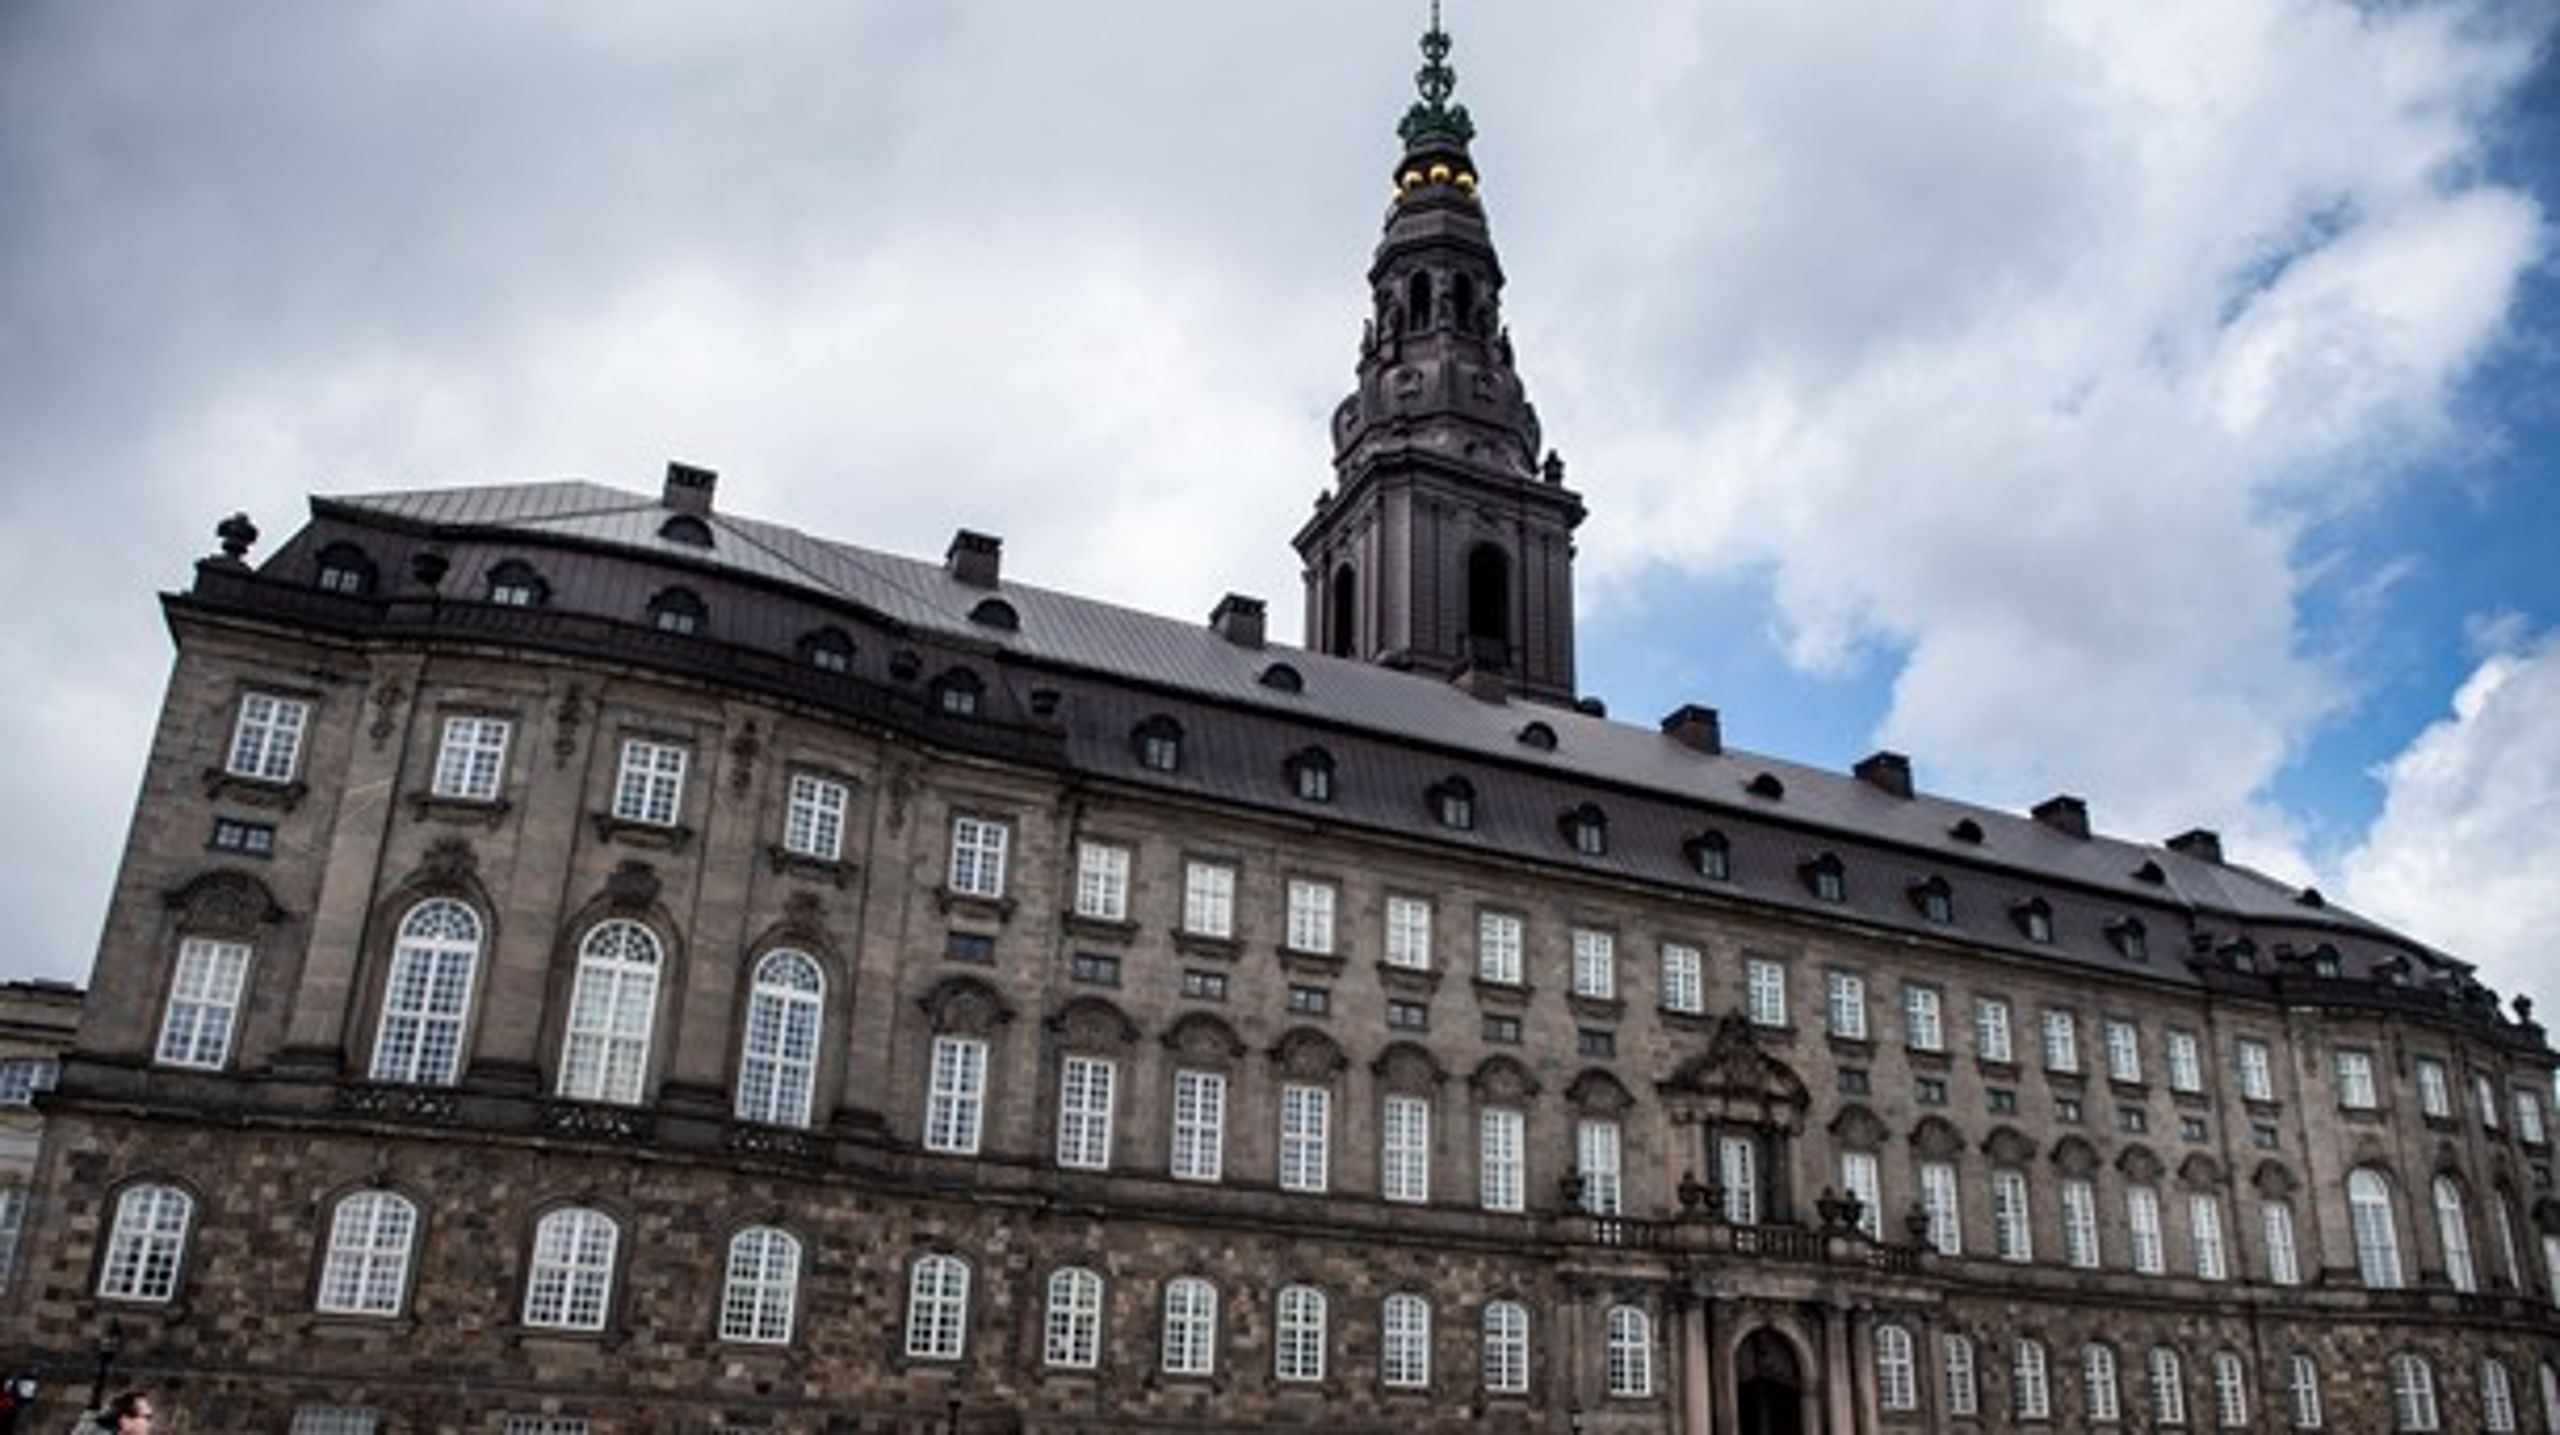 900 folketingskandidater kæmper om pladserne på Christiansborg.